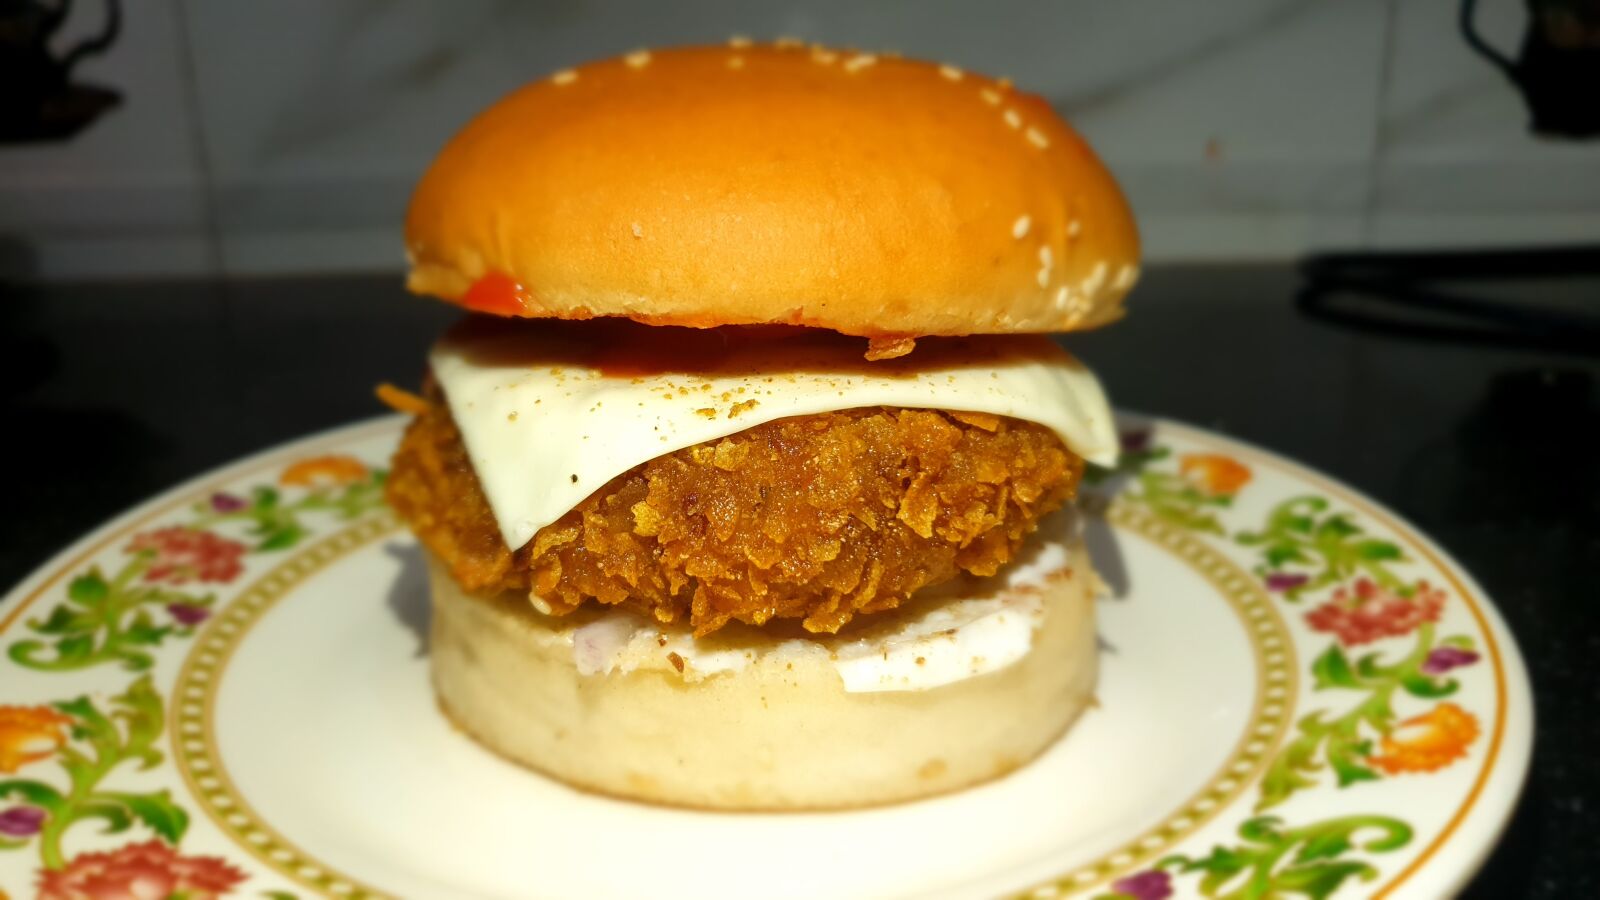 Samsung Galaxy S9 sample photo. Burger, cheeseburger, tasty food photography